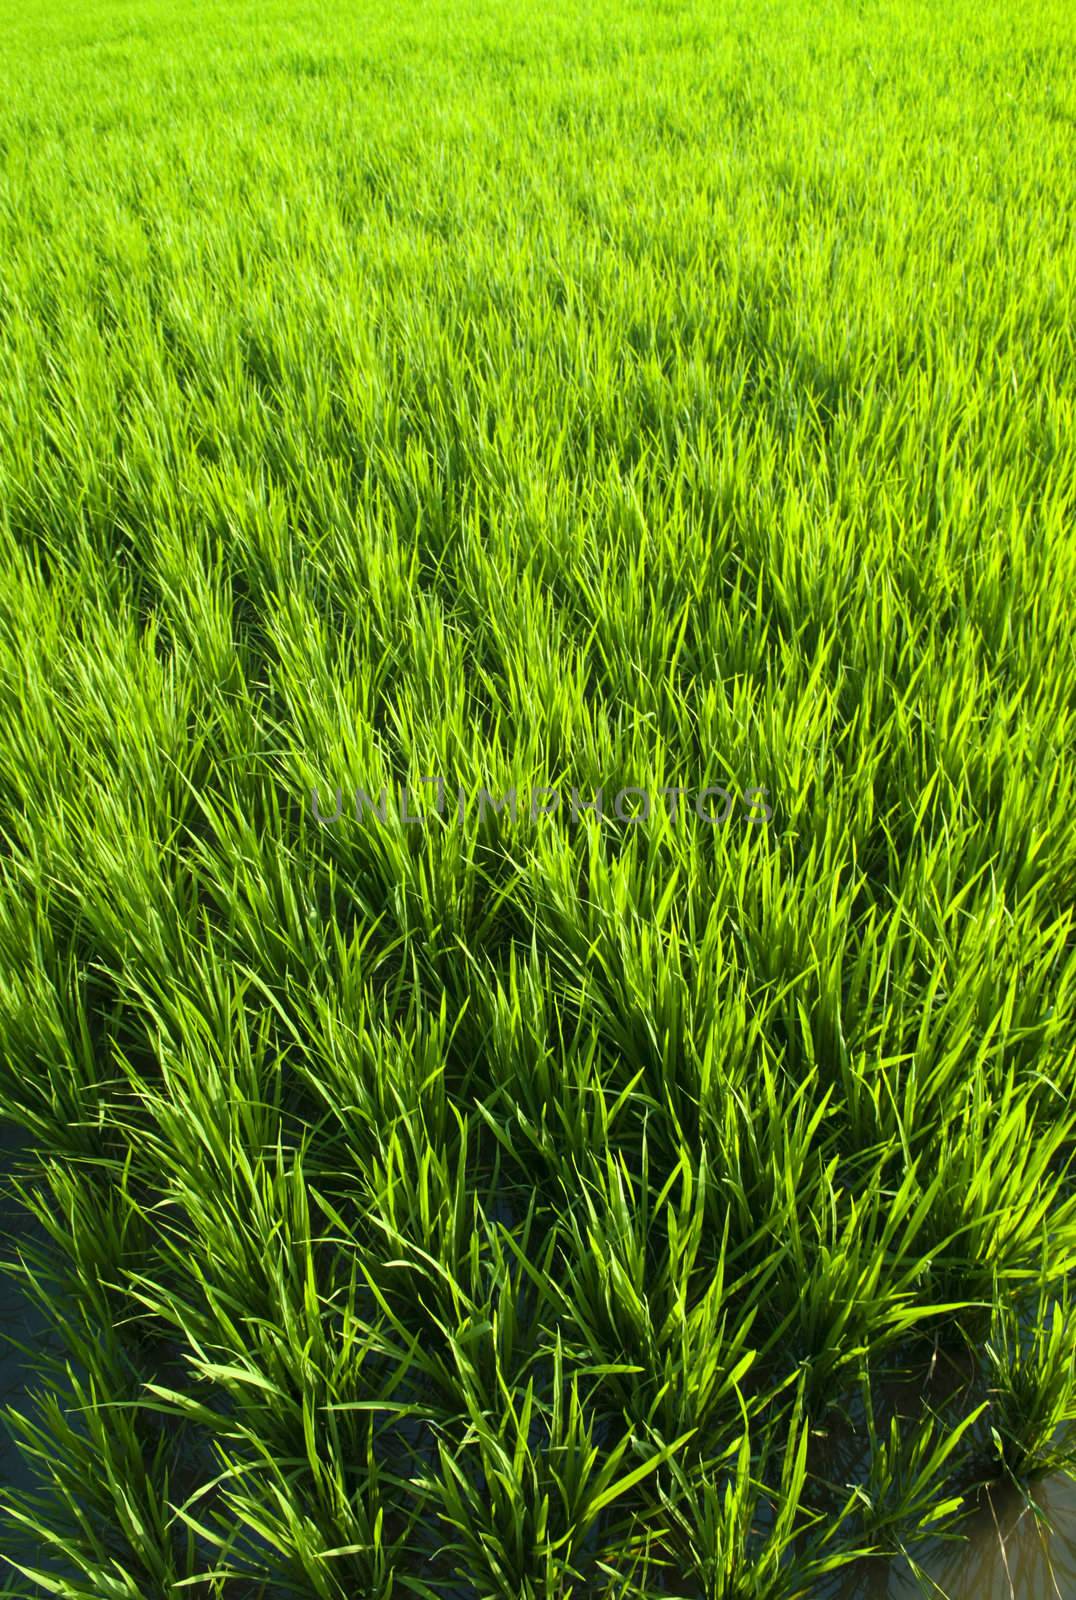 Rice field by szefei